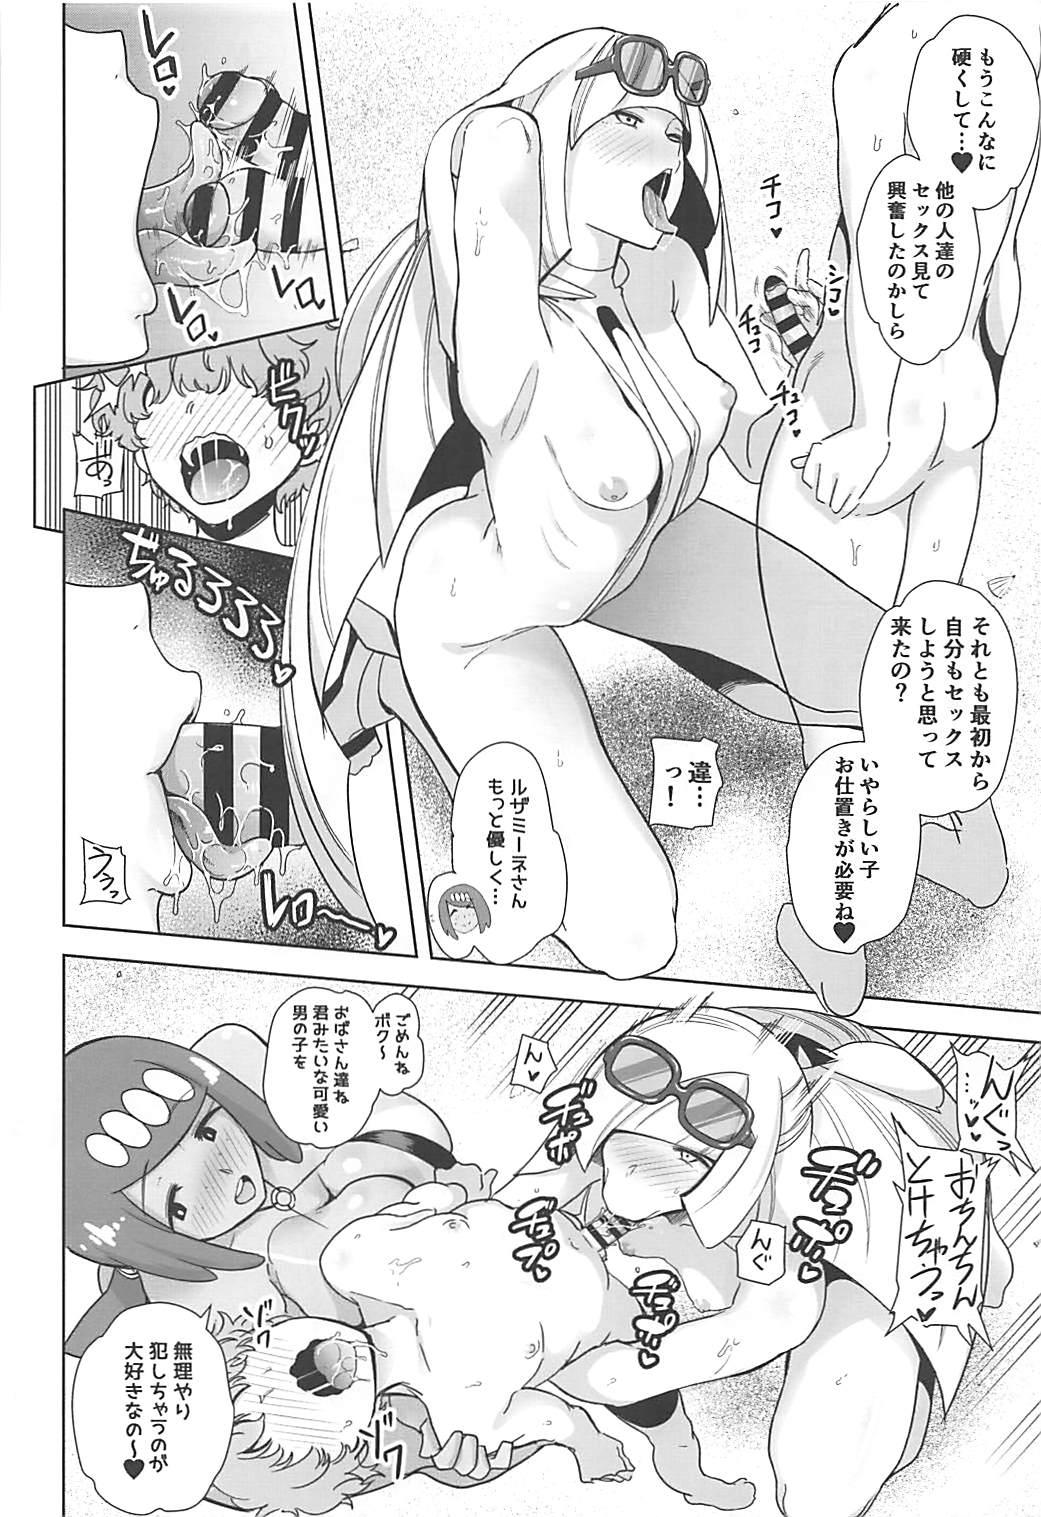 Euro Porn Alola no Yoru no Sugata 3 - Pokemon Gay Doctor - Page 5